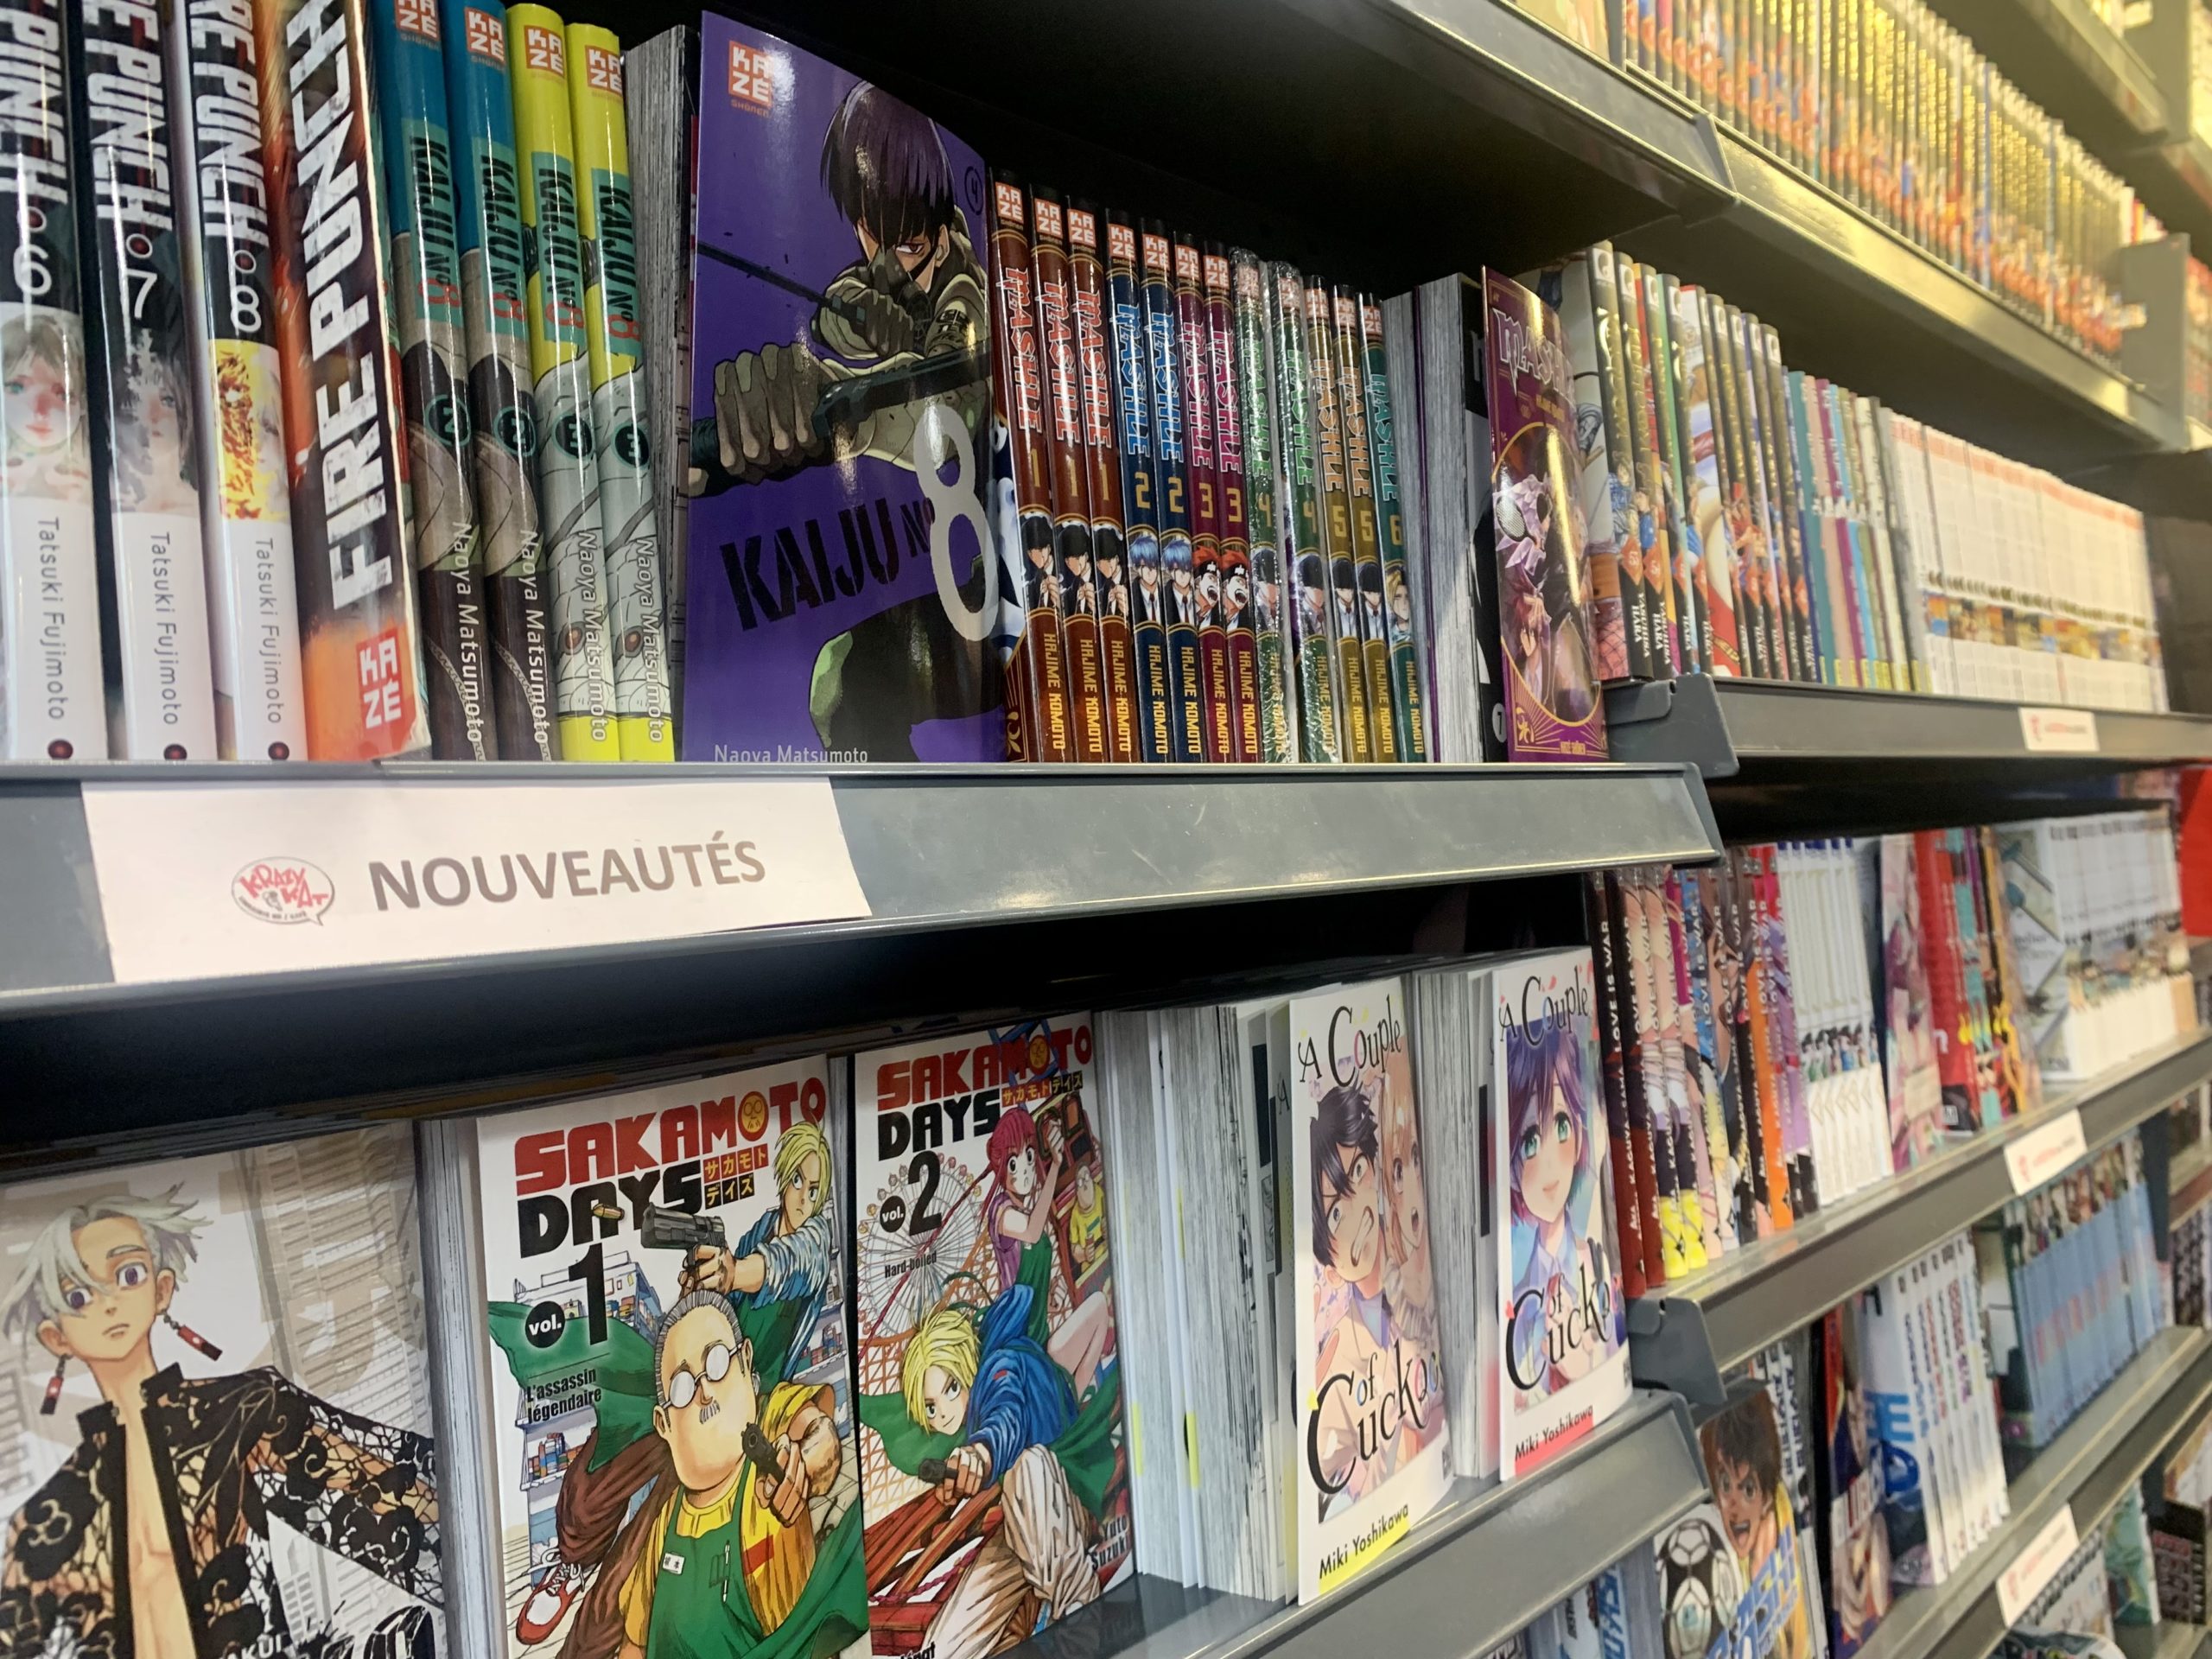 De Kat à Manga : une librairie bordelaise au cœur de la folie manga Journal du Japon